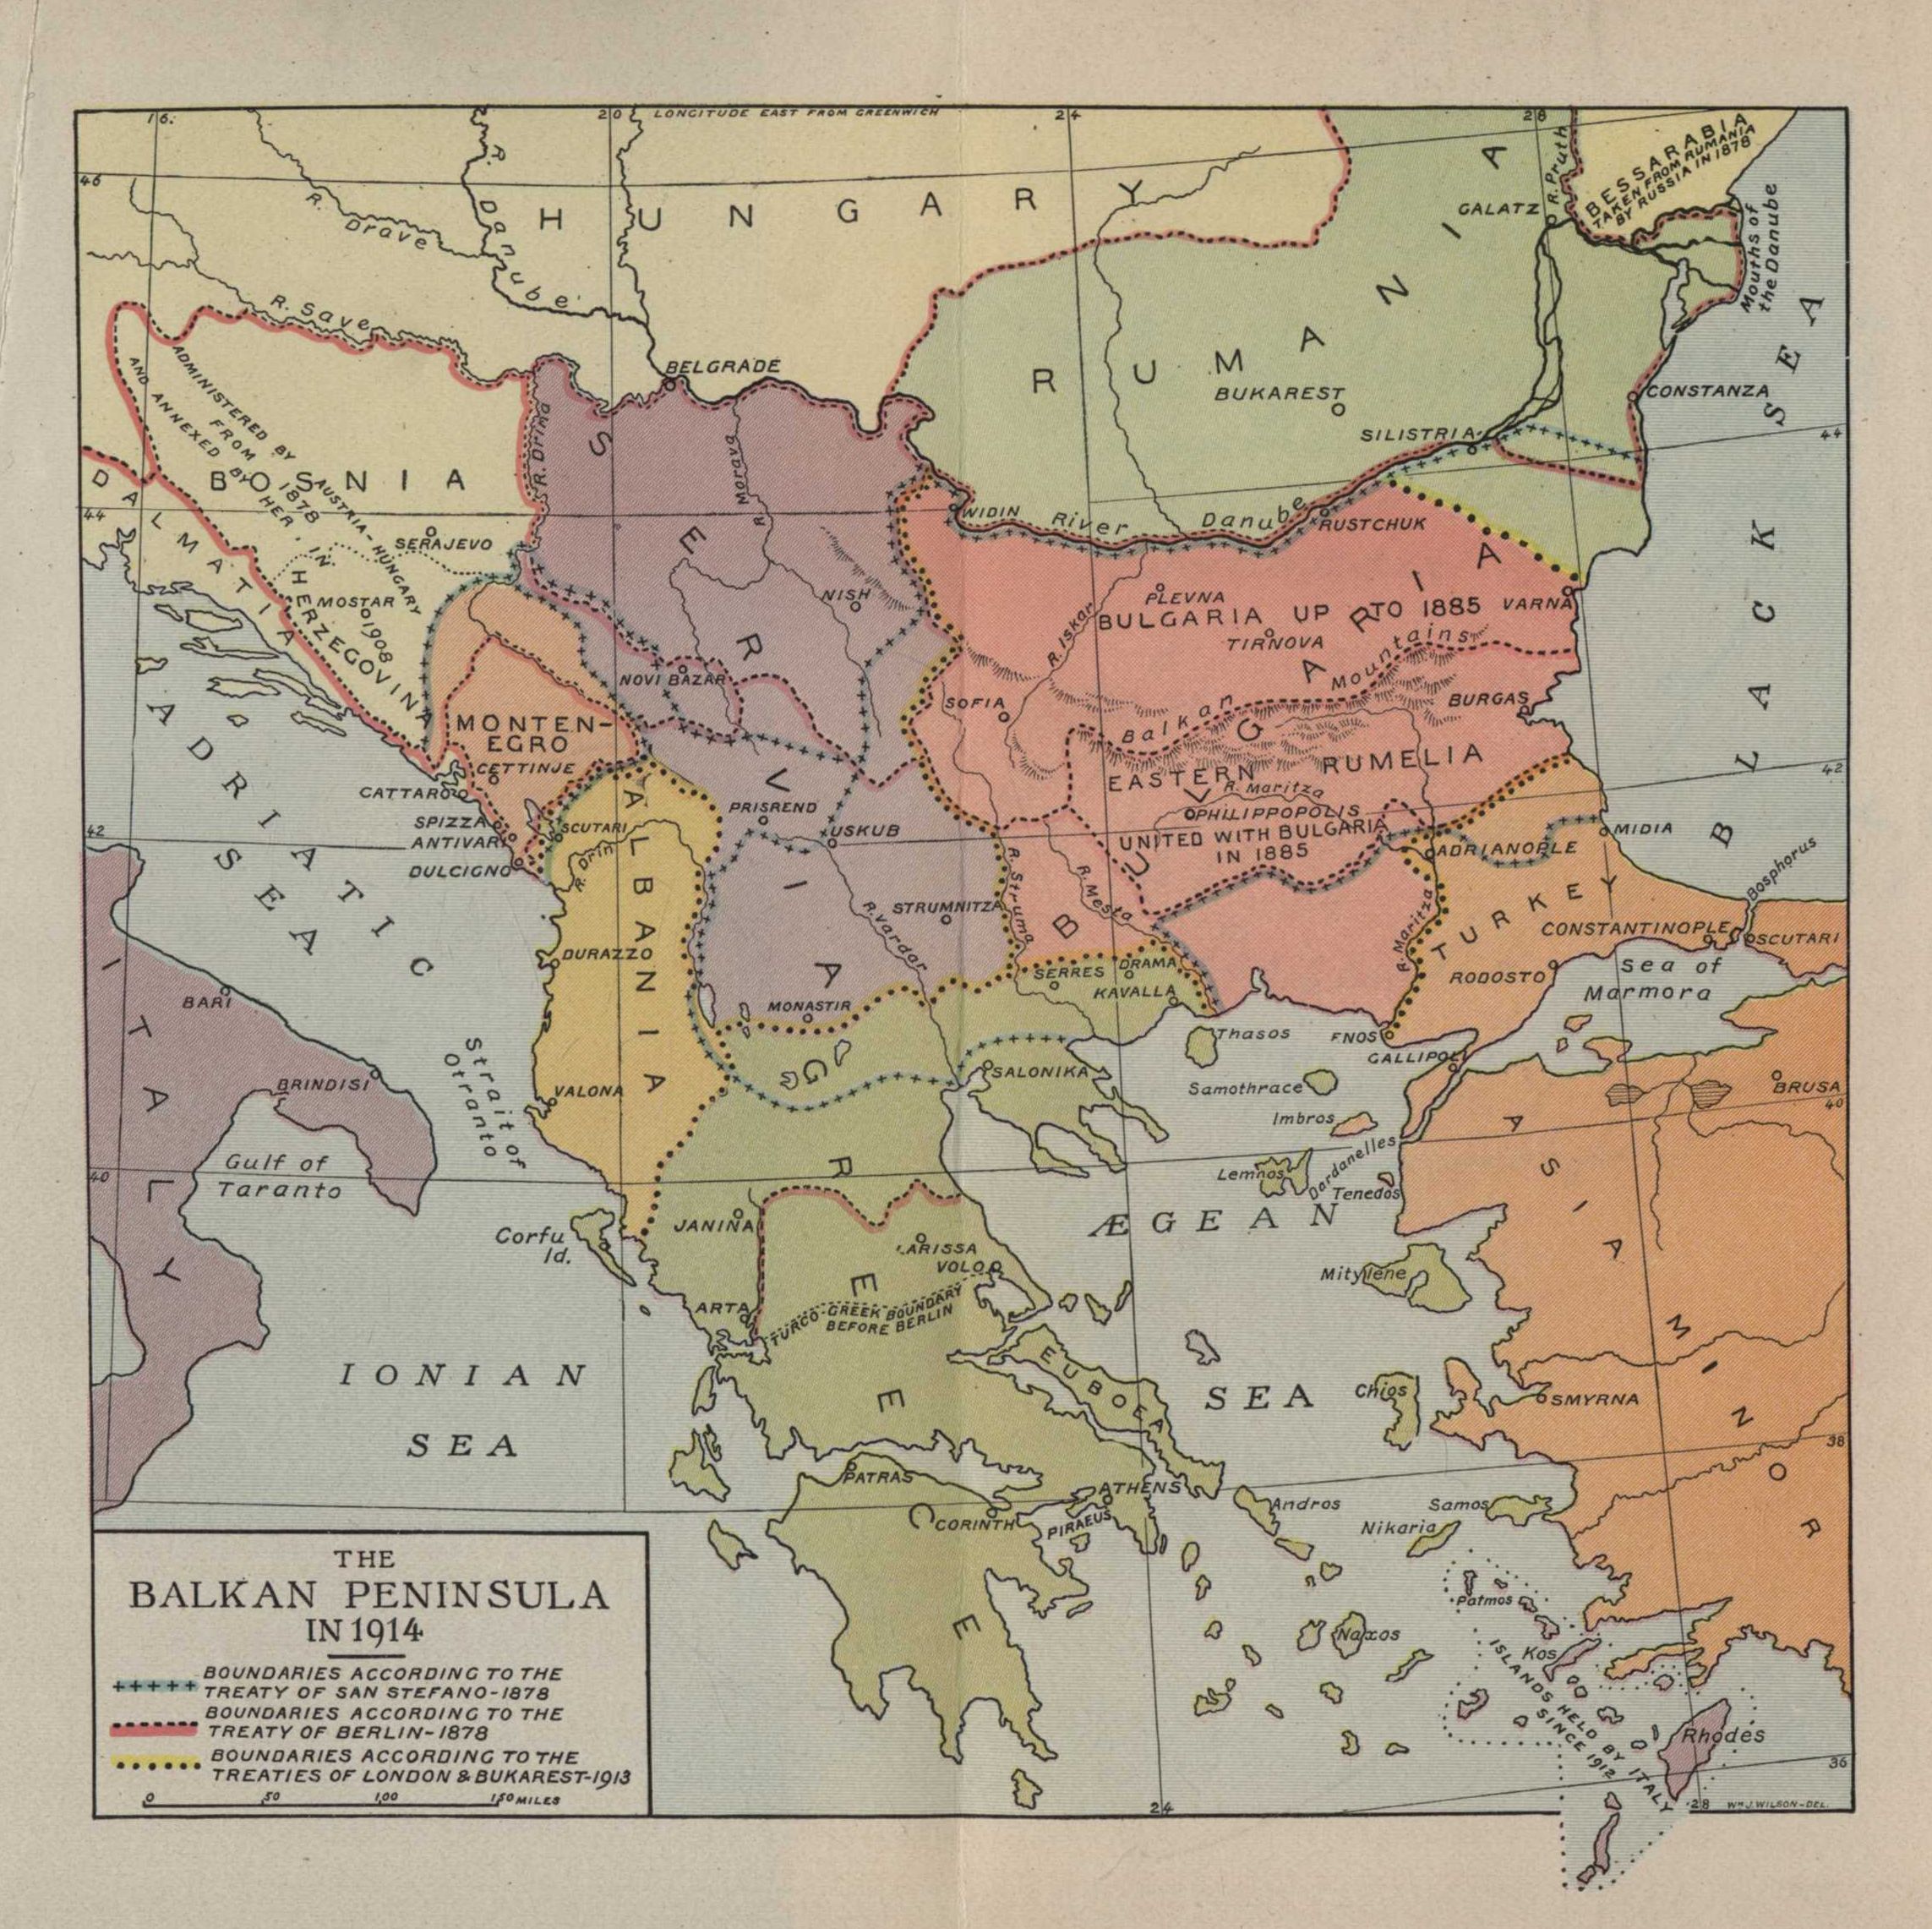 Balkan Peninsula 1914 Outline